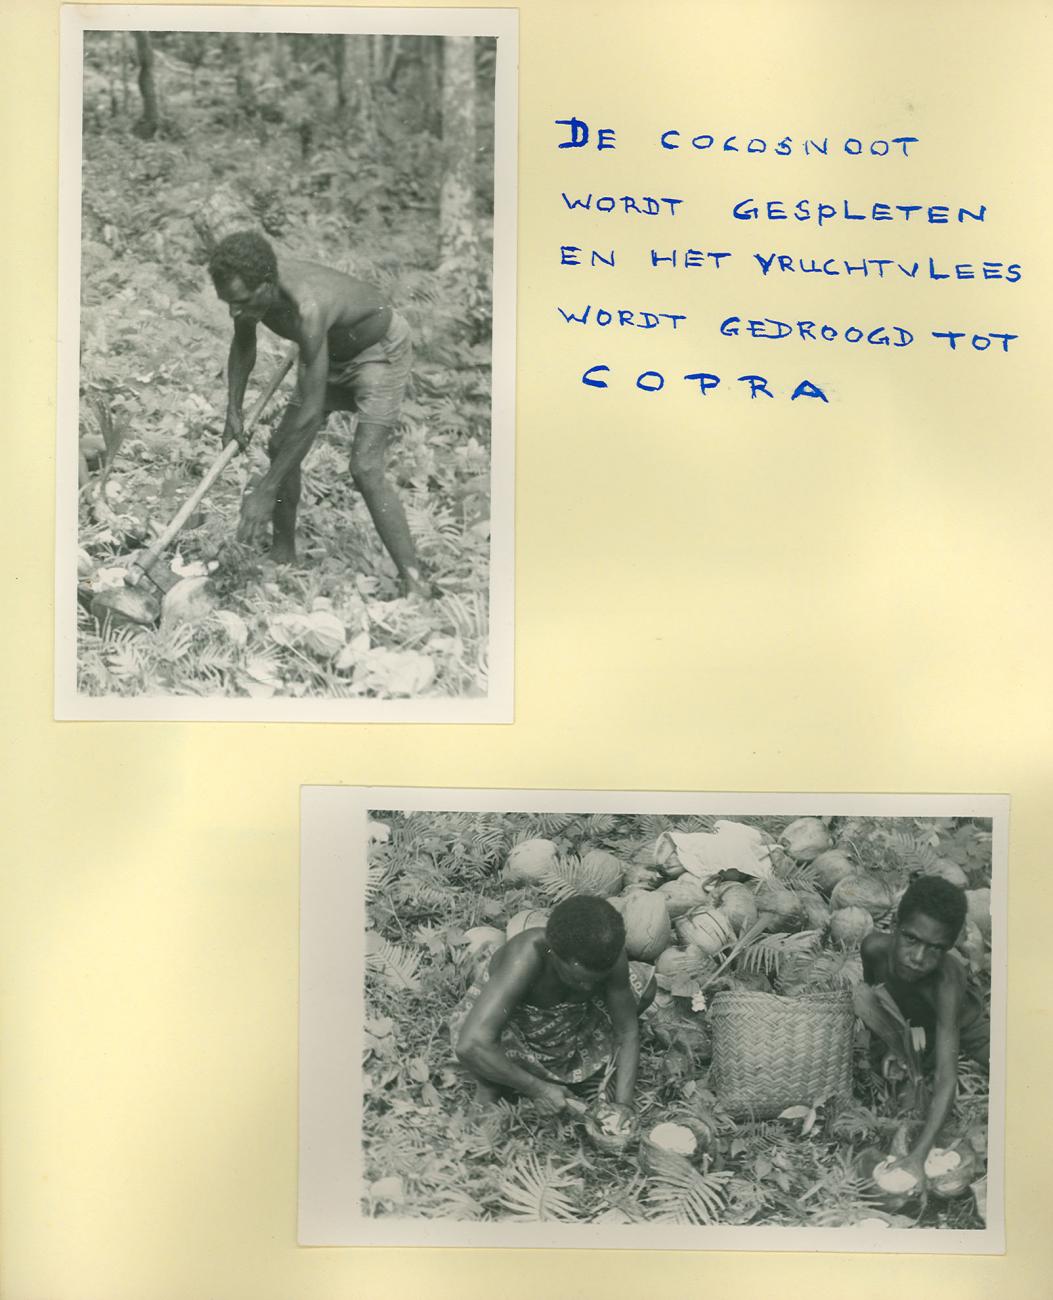 BD/83/57 - 
Arbeidsverdeling bij de verwerking van kokosnoten tot kopra
